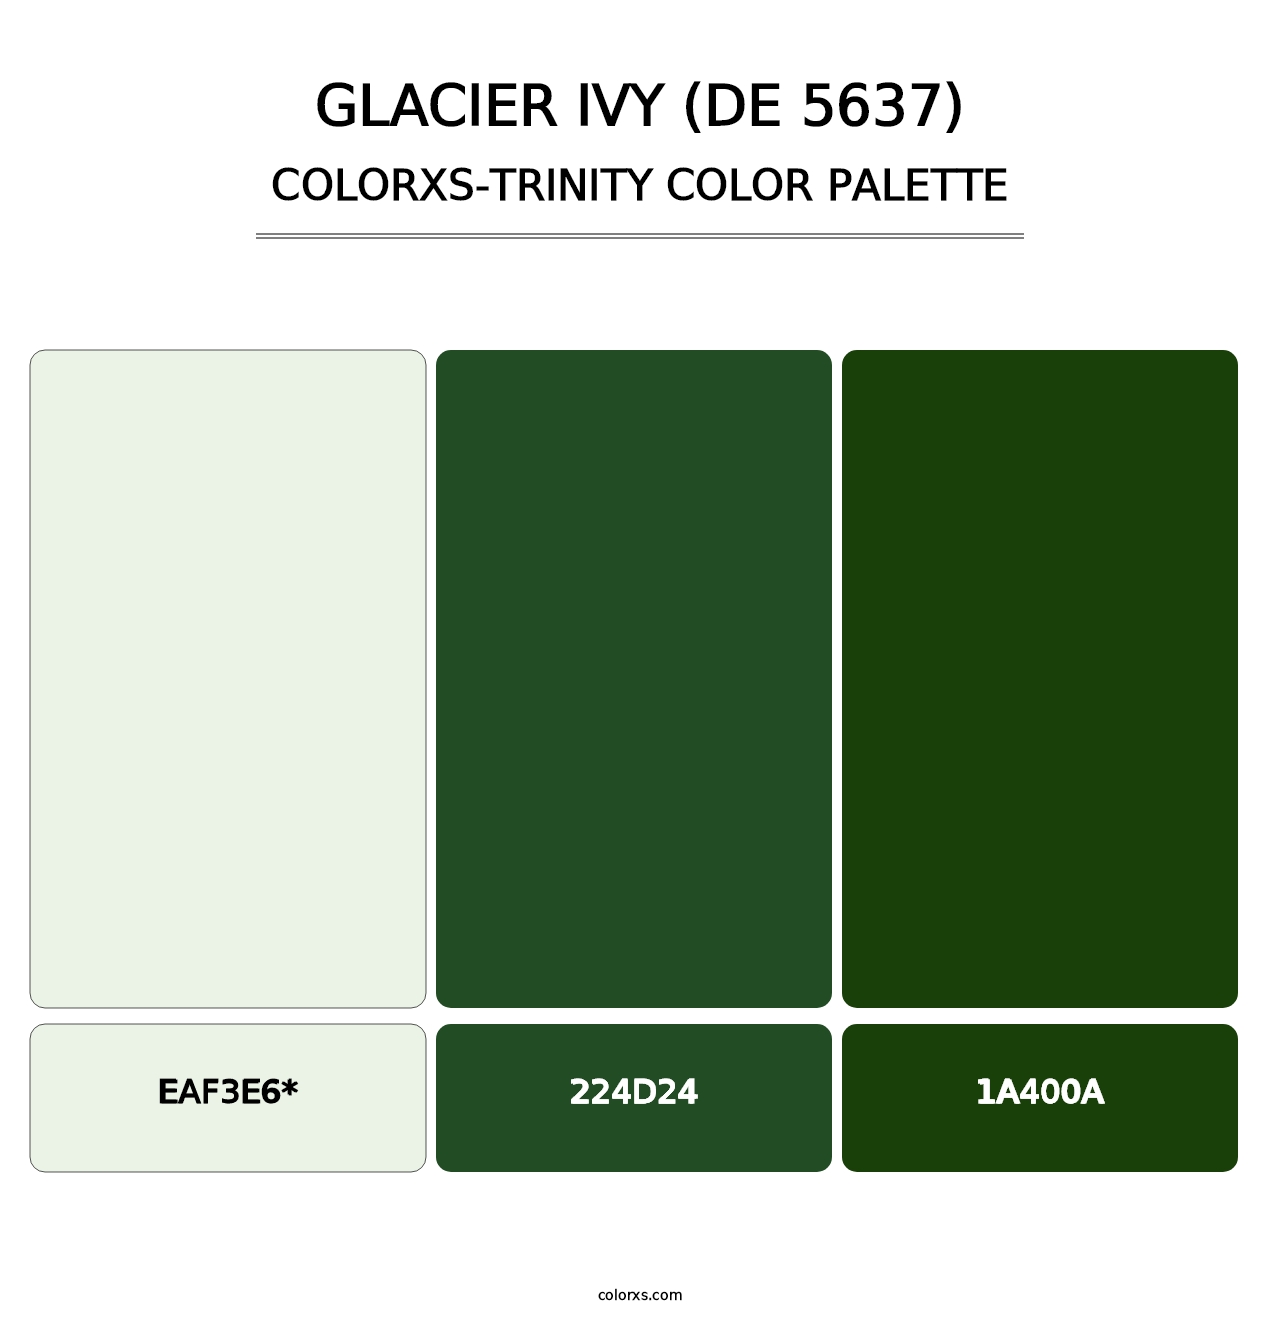 Glacier Ivy (DE 5637) - Colorxs Trinity Palette